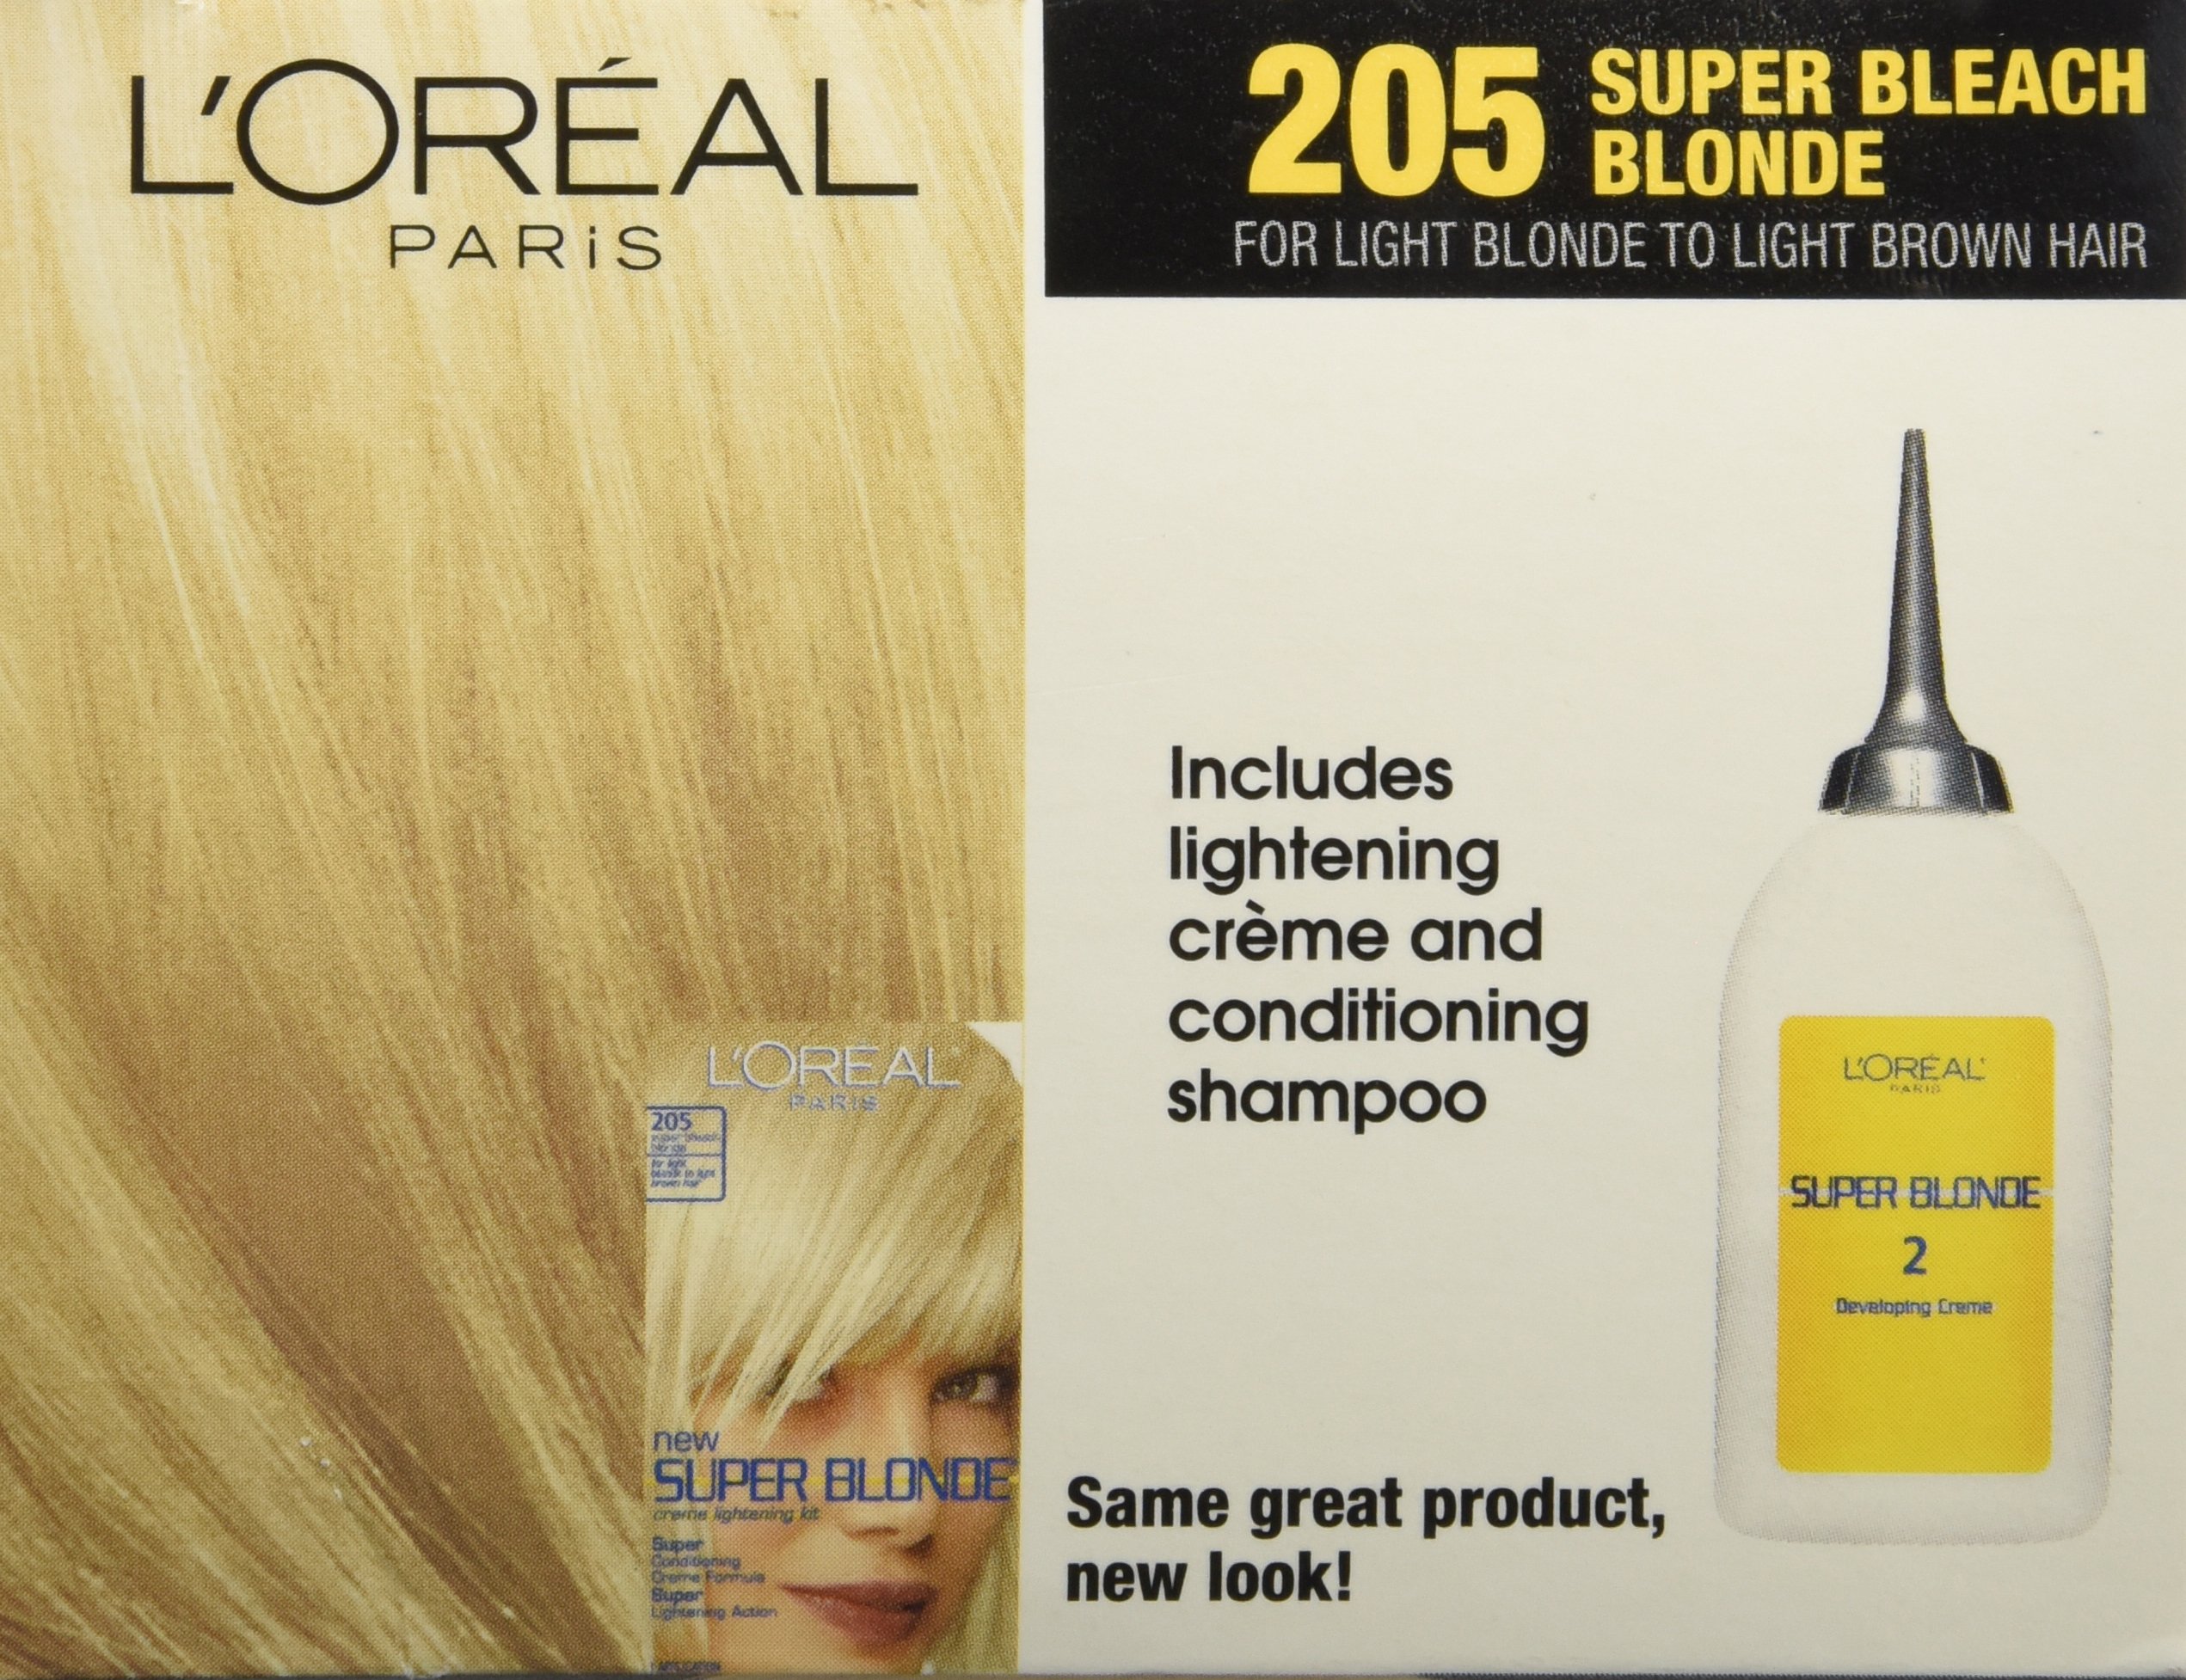 L'Oreal Paris Super Blonde Creme Lightening Kit, 205 Light Brown To Light Blonde